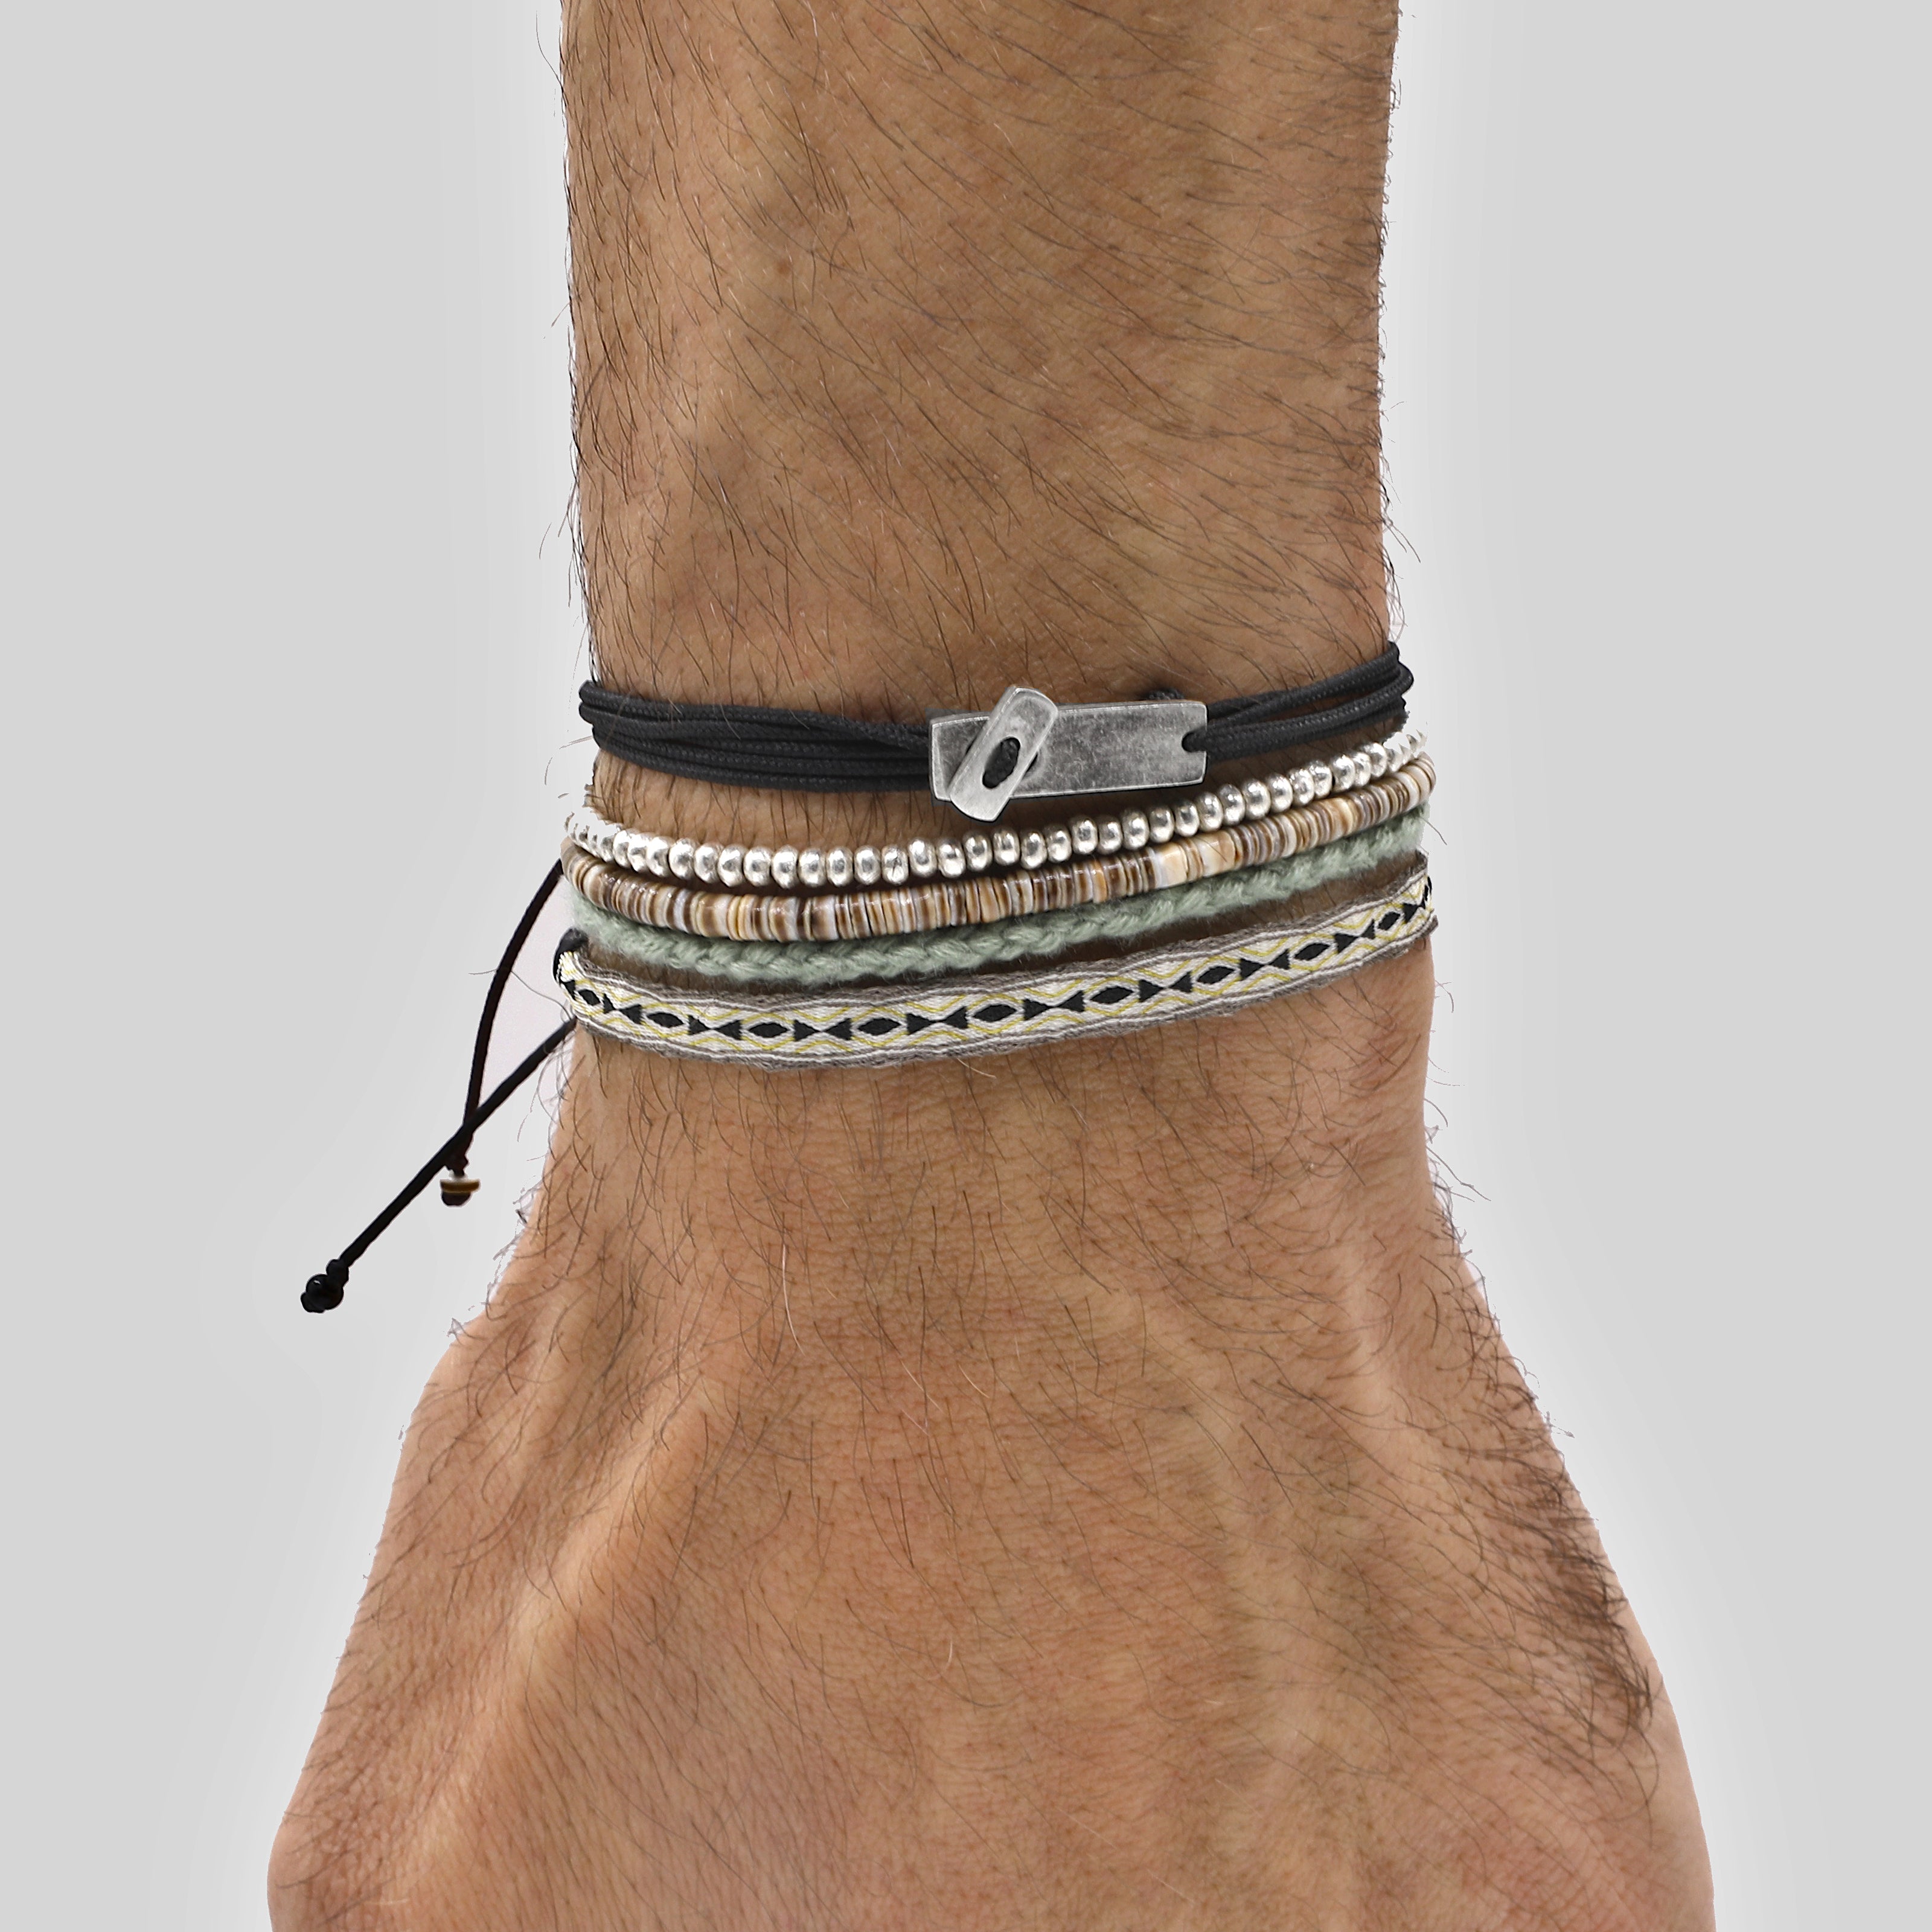 Multi Wraps String Bracelet With Sterling Silver Button (Navy)-Bracelet-Kompsós